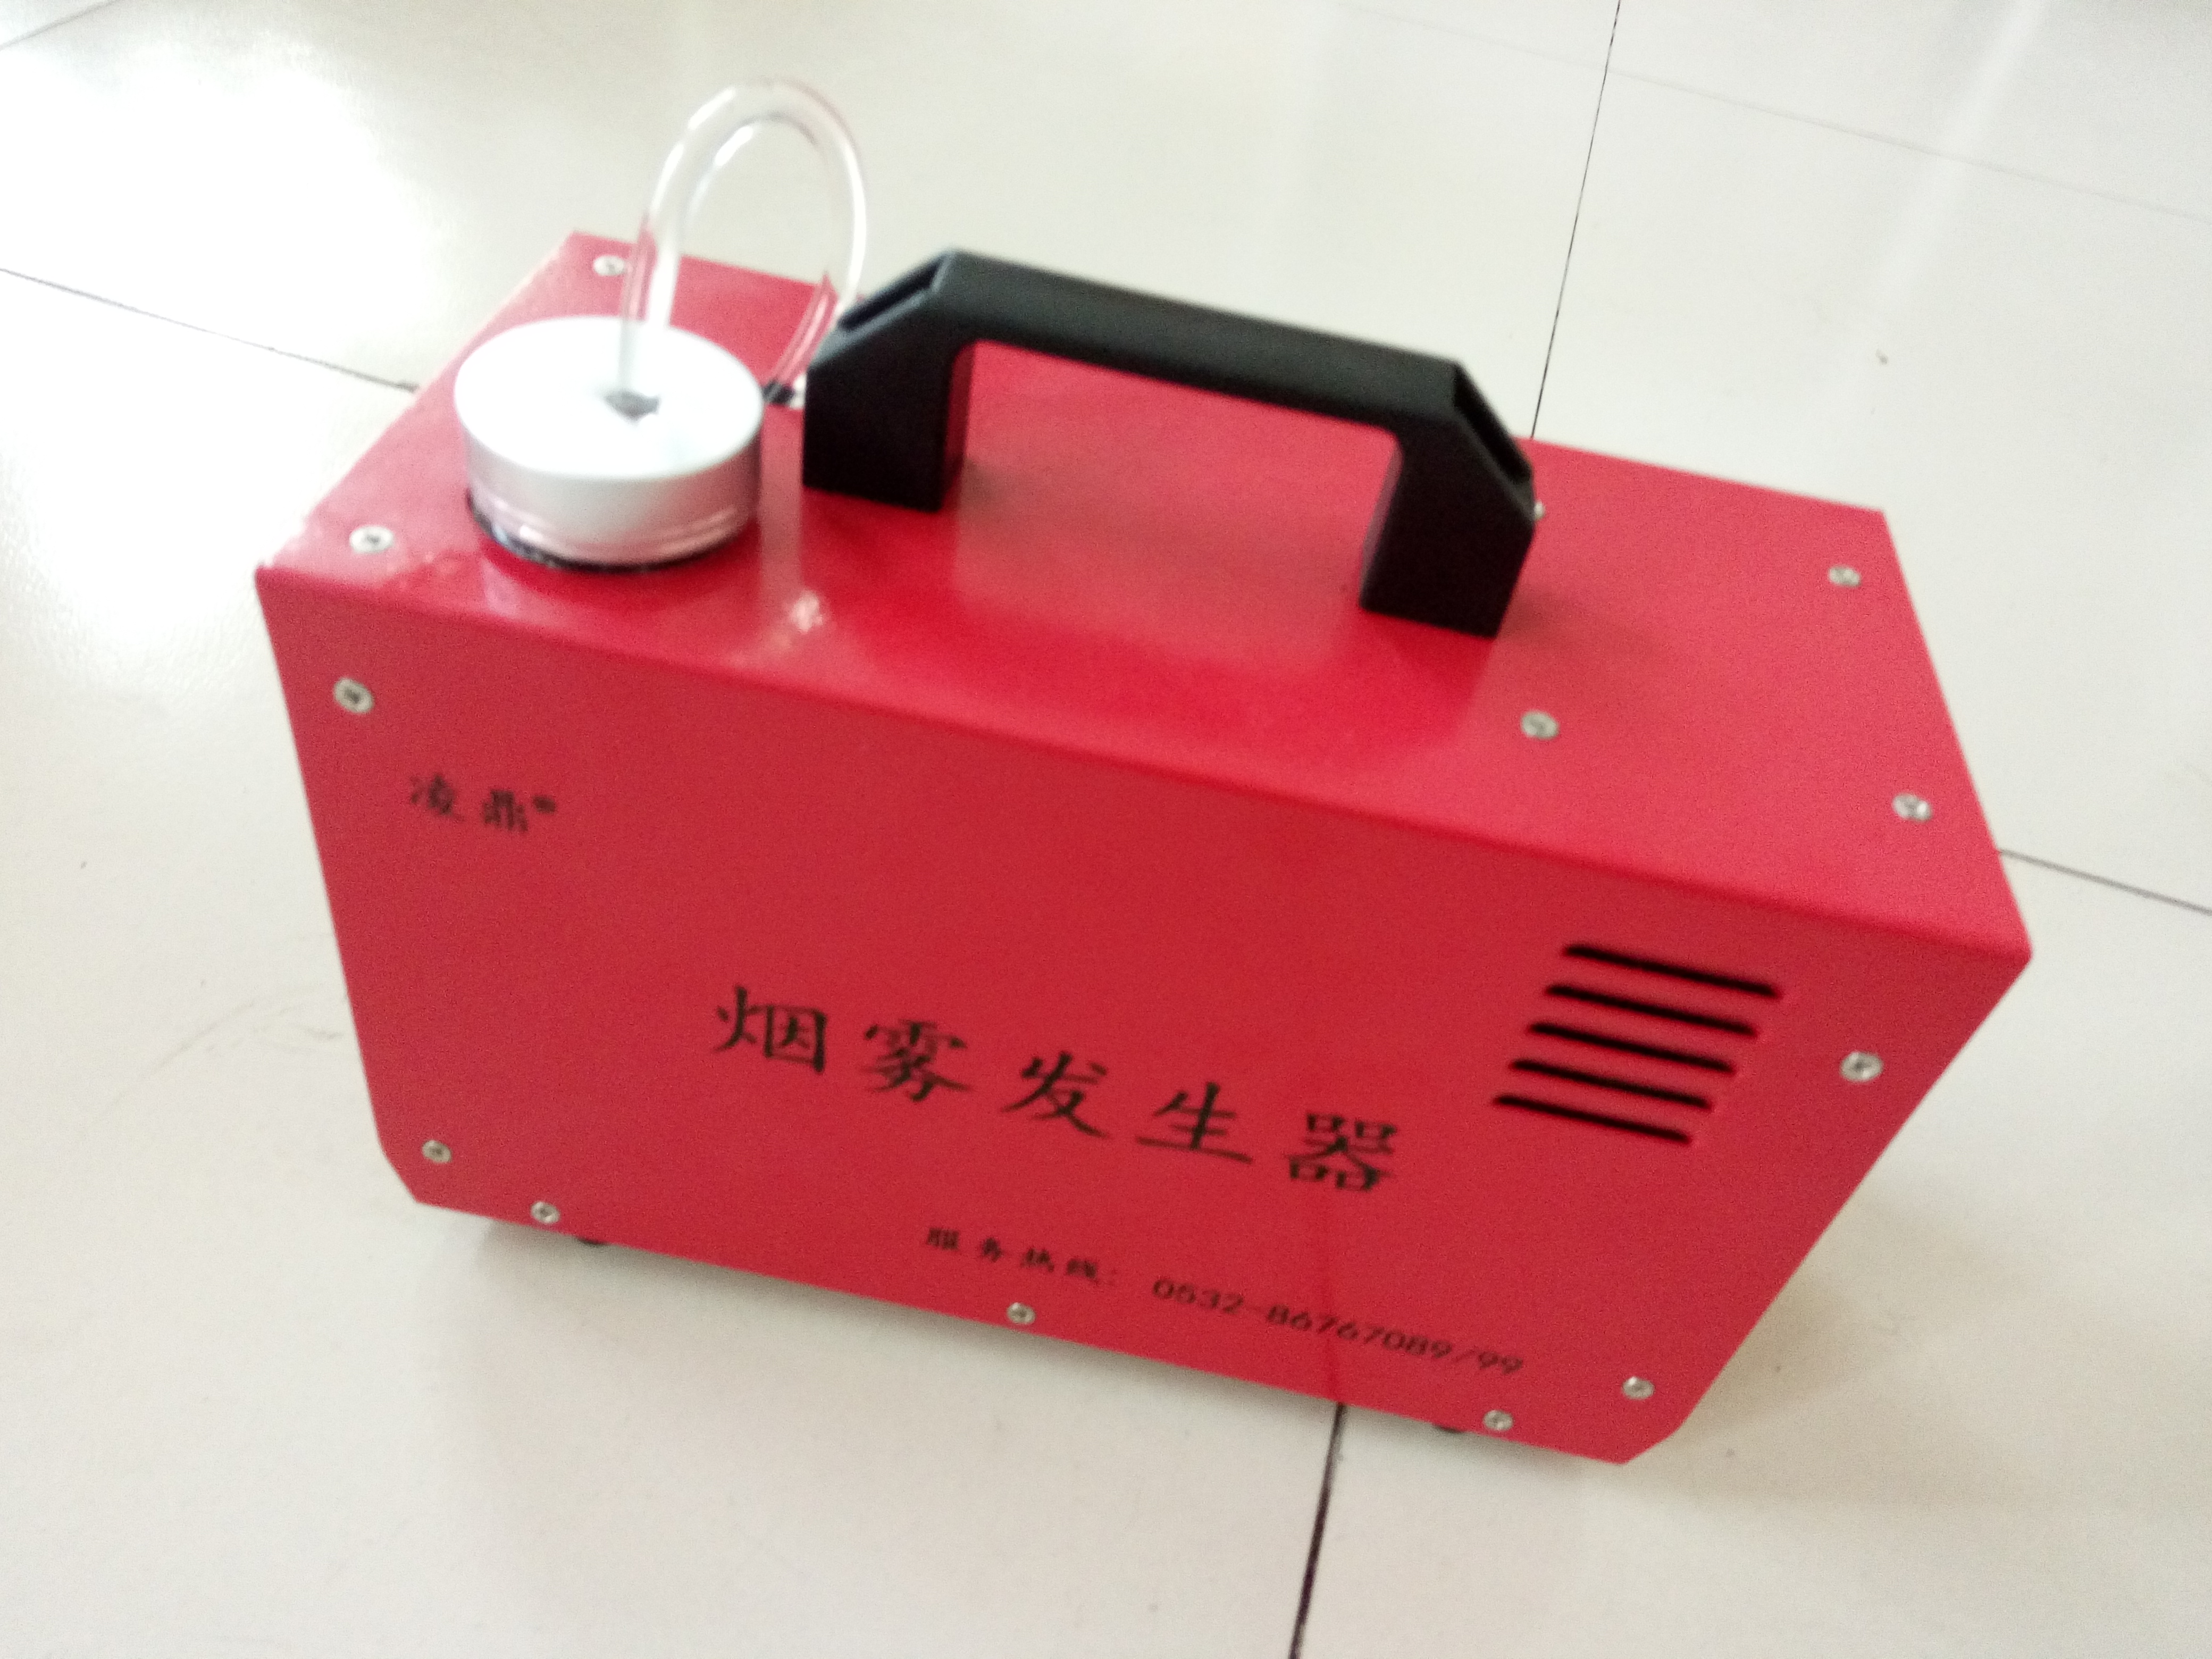 小型可充电式烟雾发生器便携式 便携式烟雾发生器